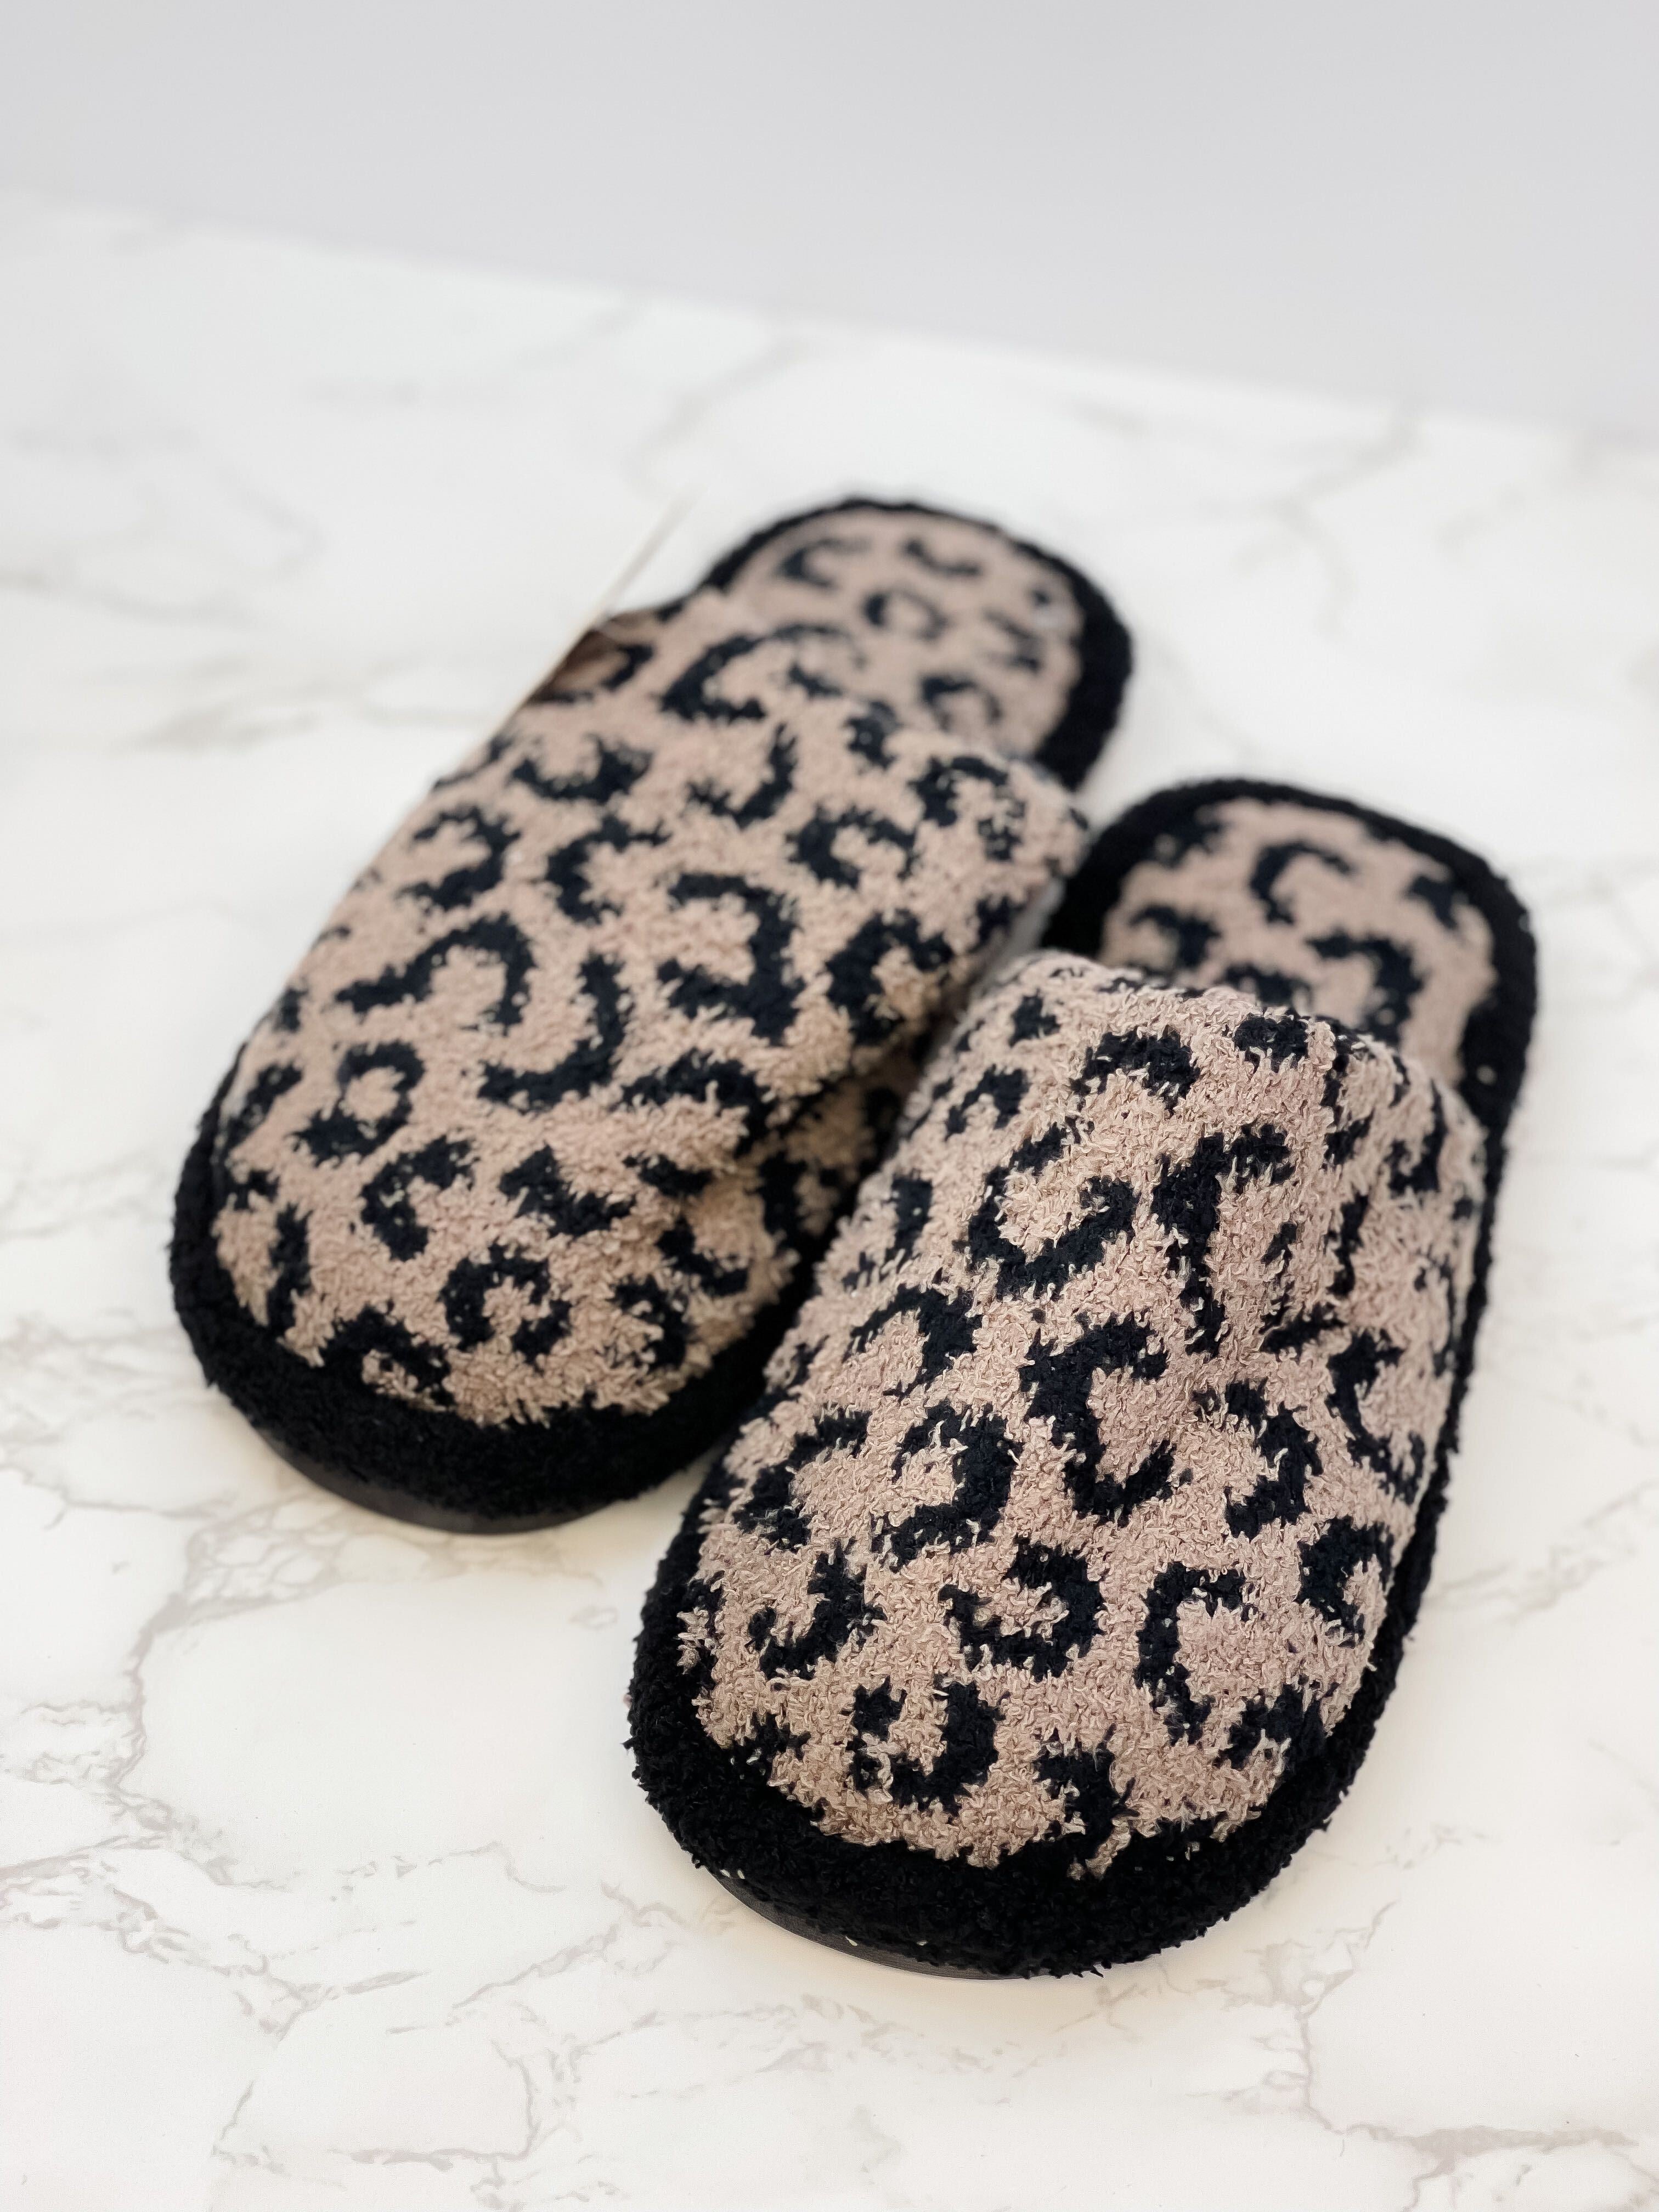 Leopard Fuzzy Slippers - Coffee